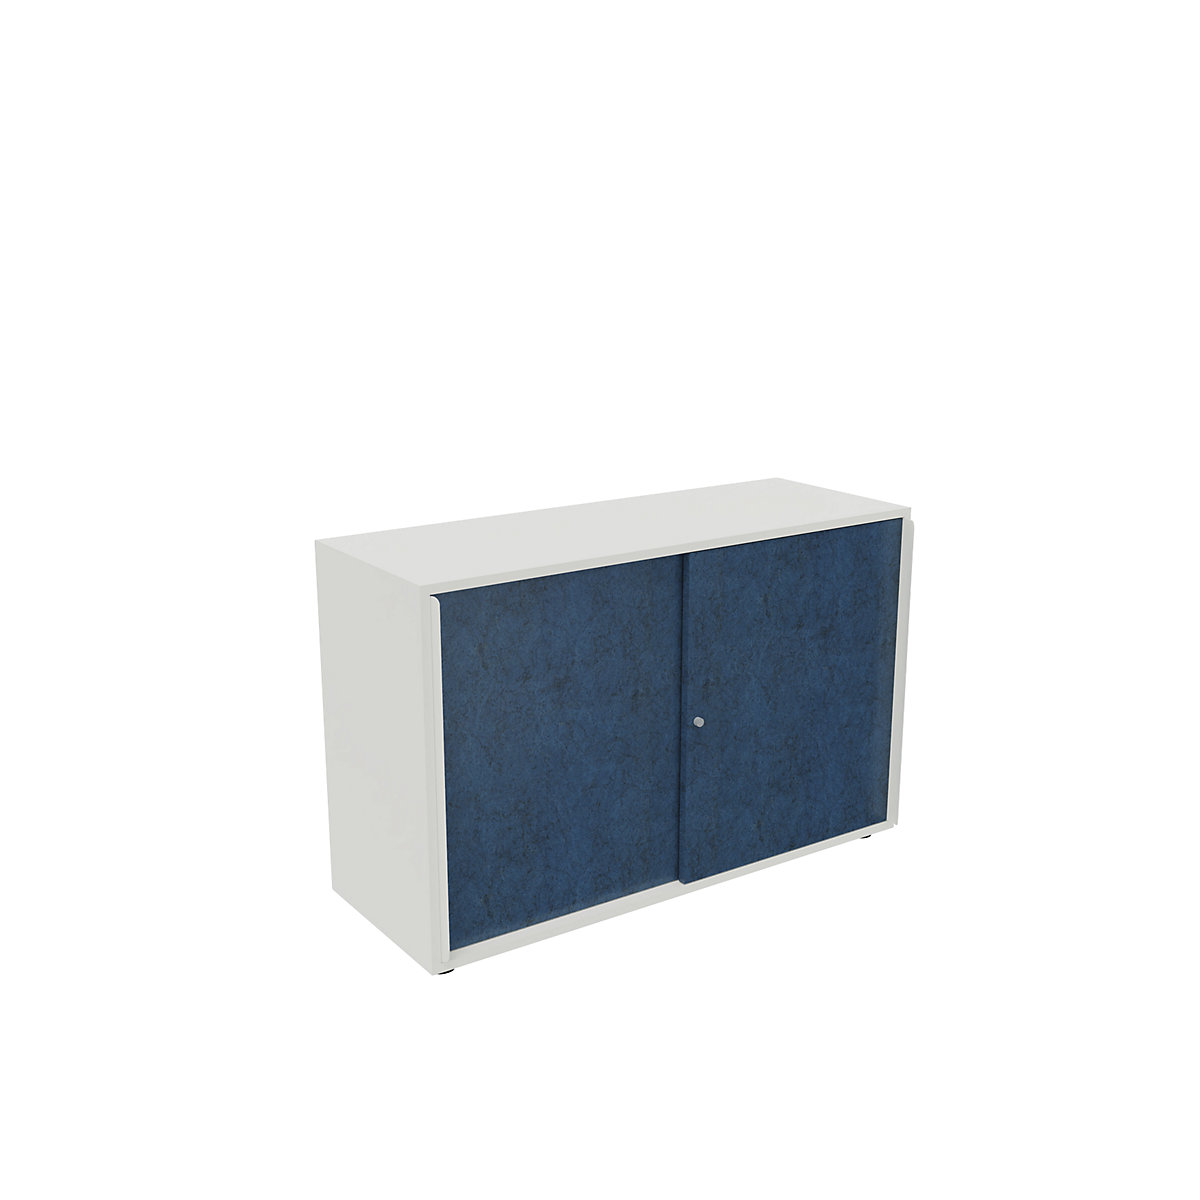 Skriňa s posuvnými dverami NEOTEX s akustickým čelom, v x š x h 775 x 1200 x 440 mm, čelo atlantická modrá-9